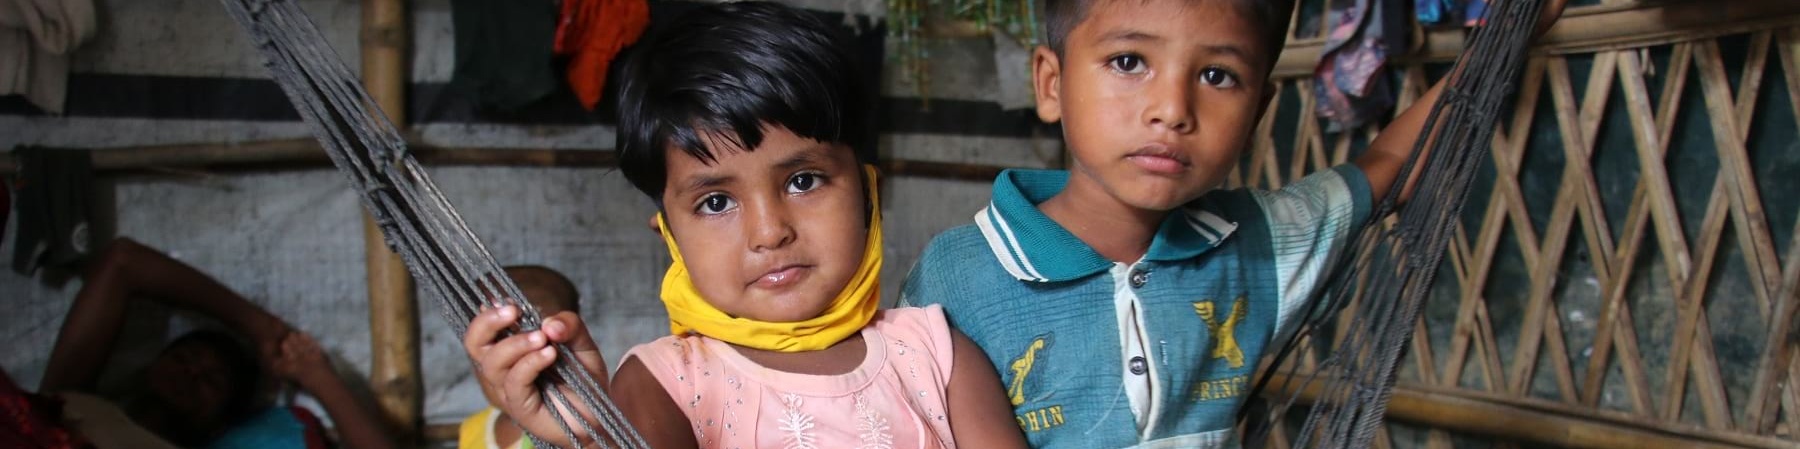 Due bambini Rohingya sono seudti a terra vicini. Il maschio è piu grande e indossa jeans lunghi e una maglietta a maniche corte verde, la bambina ha una canottierina bianca e rossa e una gonna e tiene in mano un peluche giallo